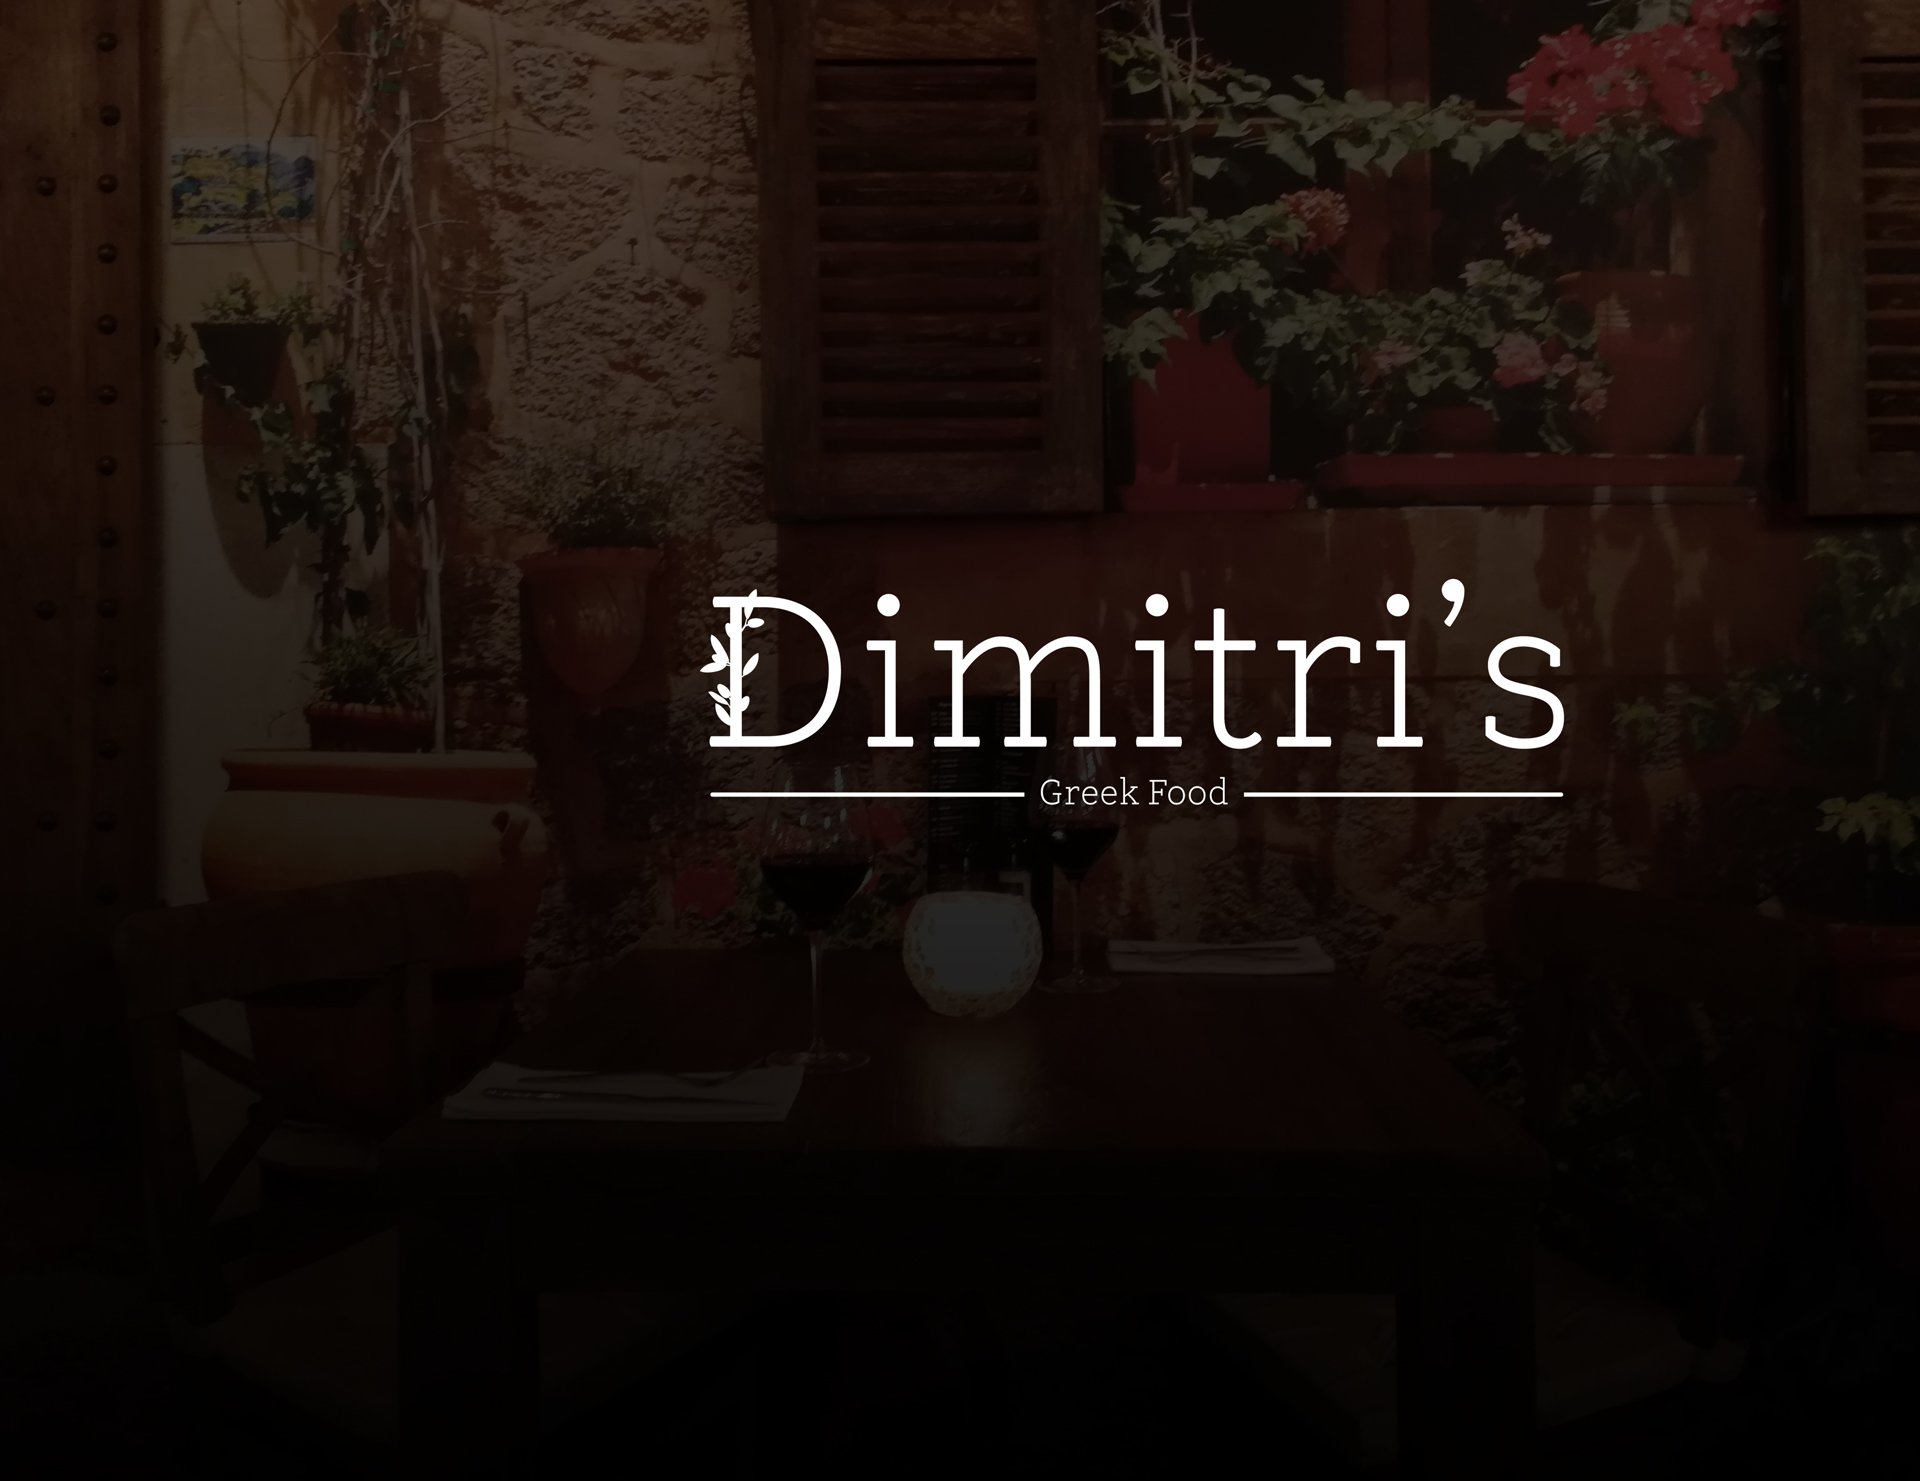 Dimitri's